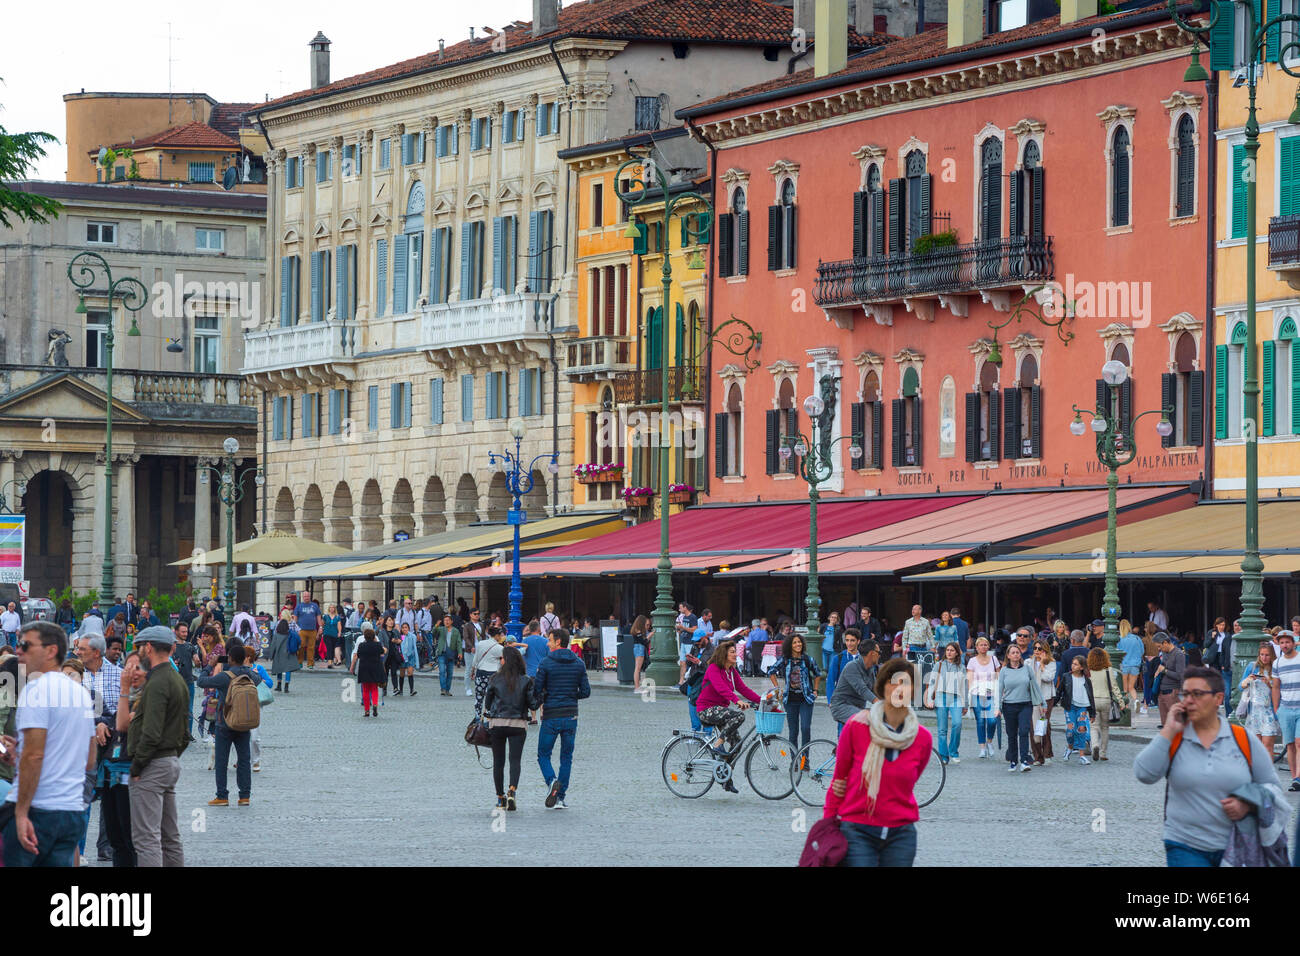 La Piazza Bra es una plaza muy grande en Verona. Contiene la arena (no se muestra) y está recubierto con edificios antiguos. Foto de stock